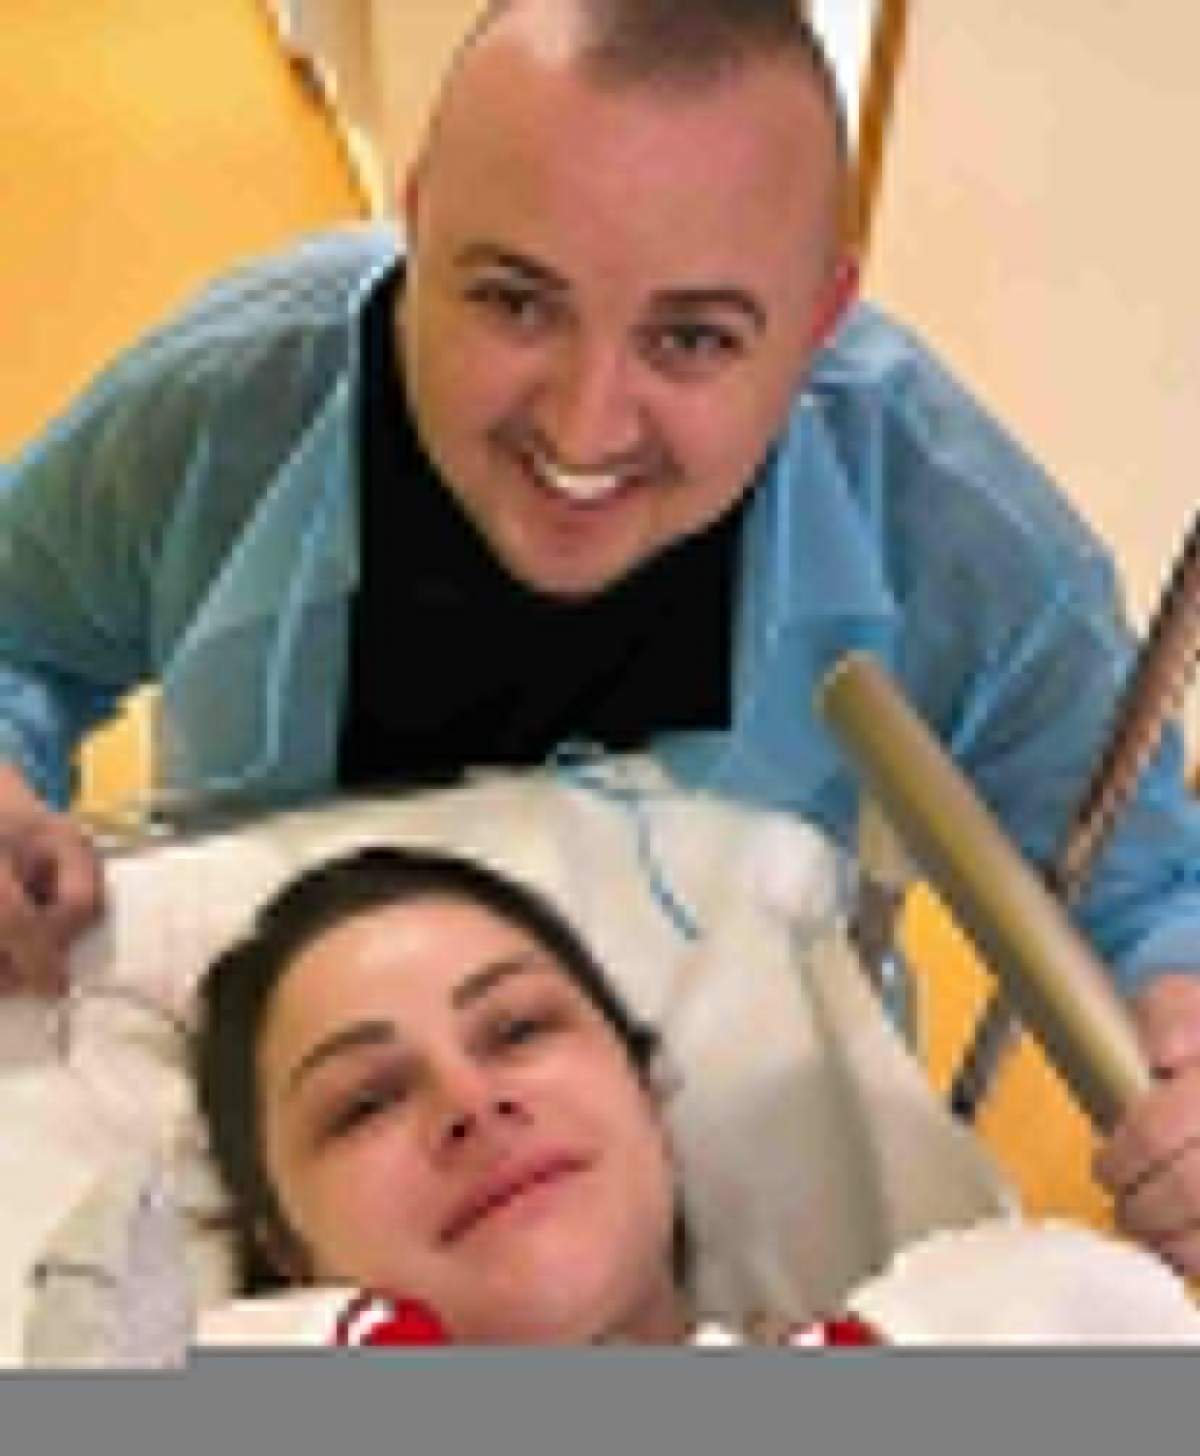 Soția lui Vasilică Ceterașu a născut gemeni! Amalia Ceterașu a devenit mamă pentru a doua oară: “Cea mai mare bucurie” / FOTO